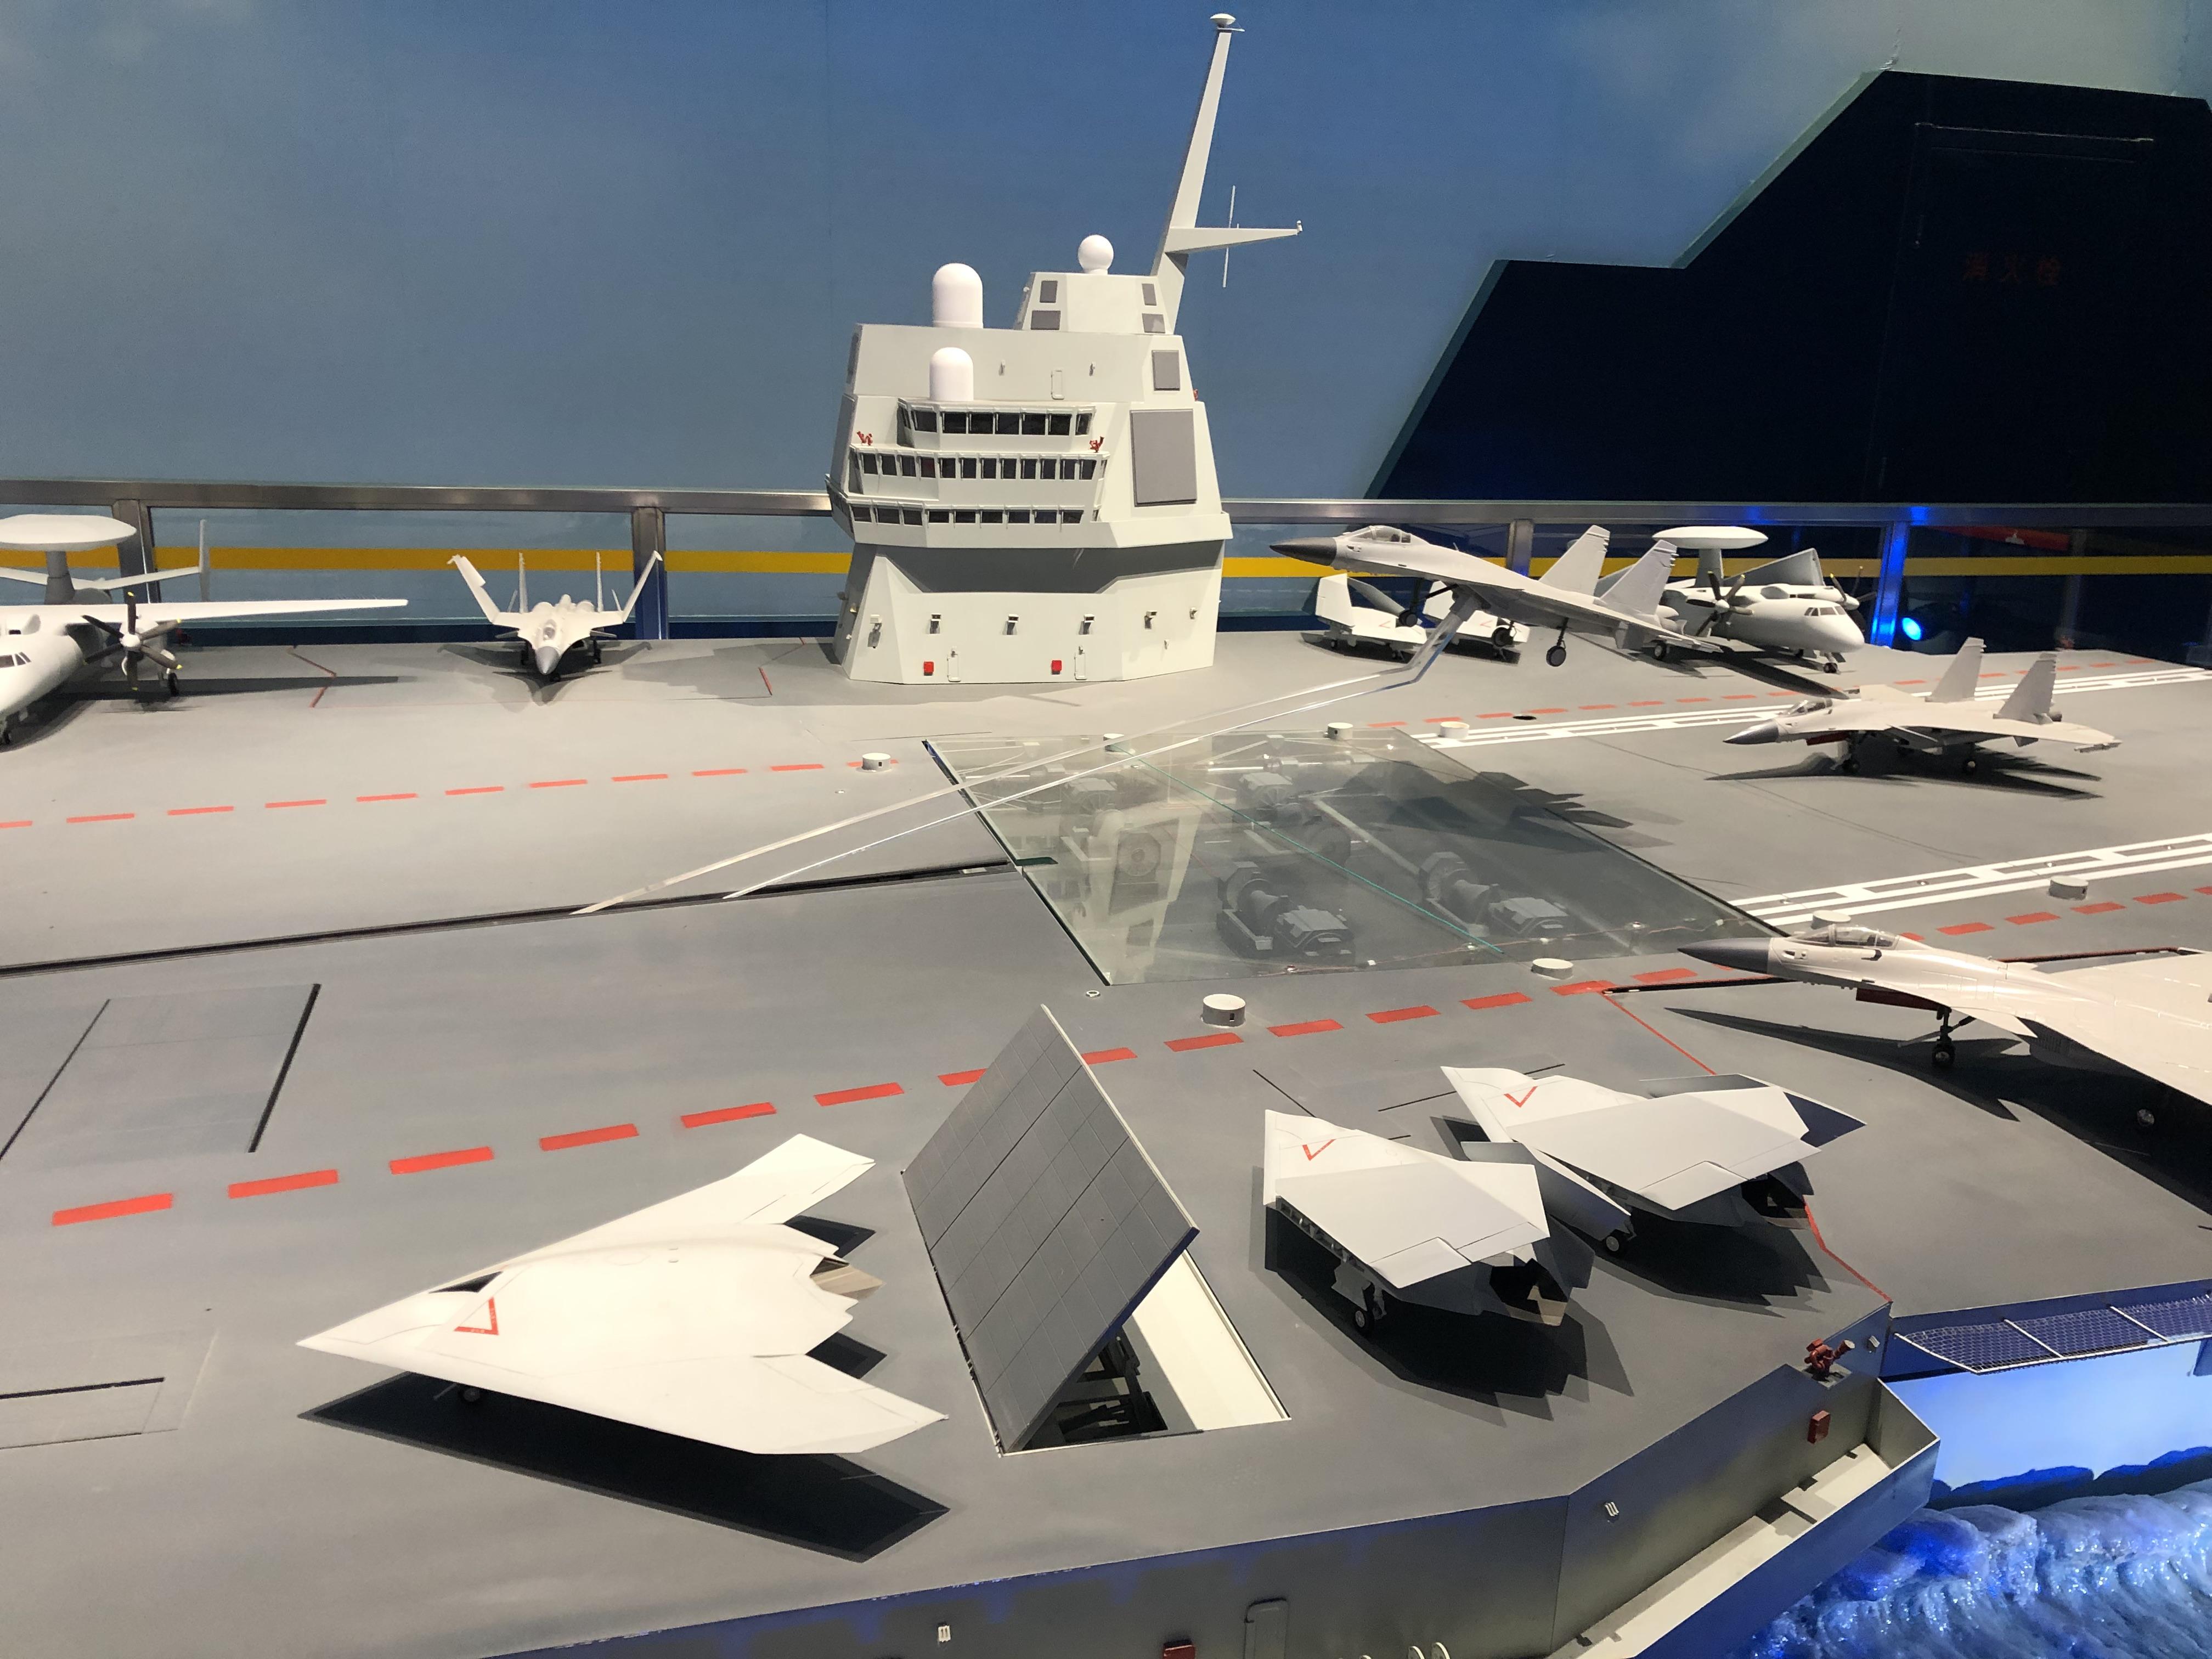 如何评价阿利伯克3下水美国海军水面舰队发展迷茫期的无奈过渡产品